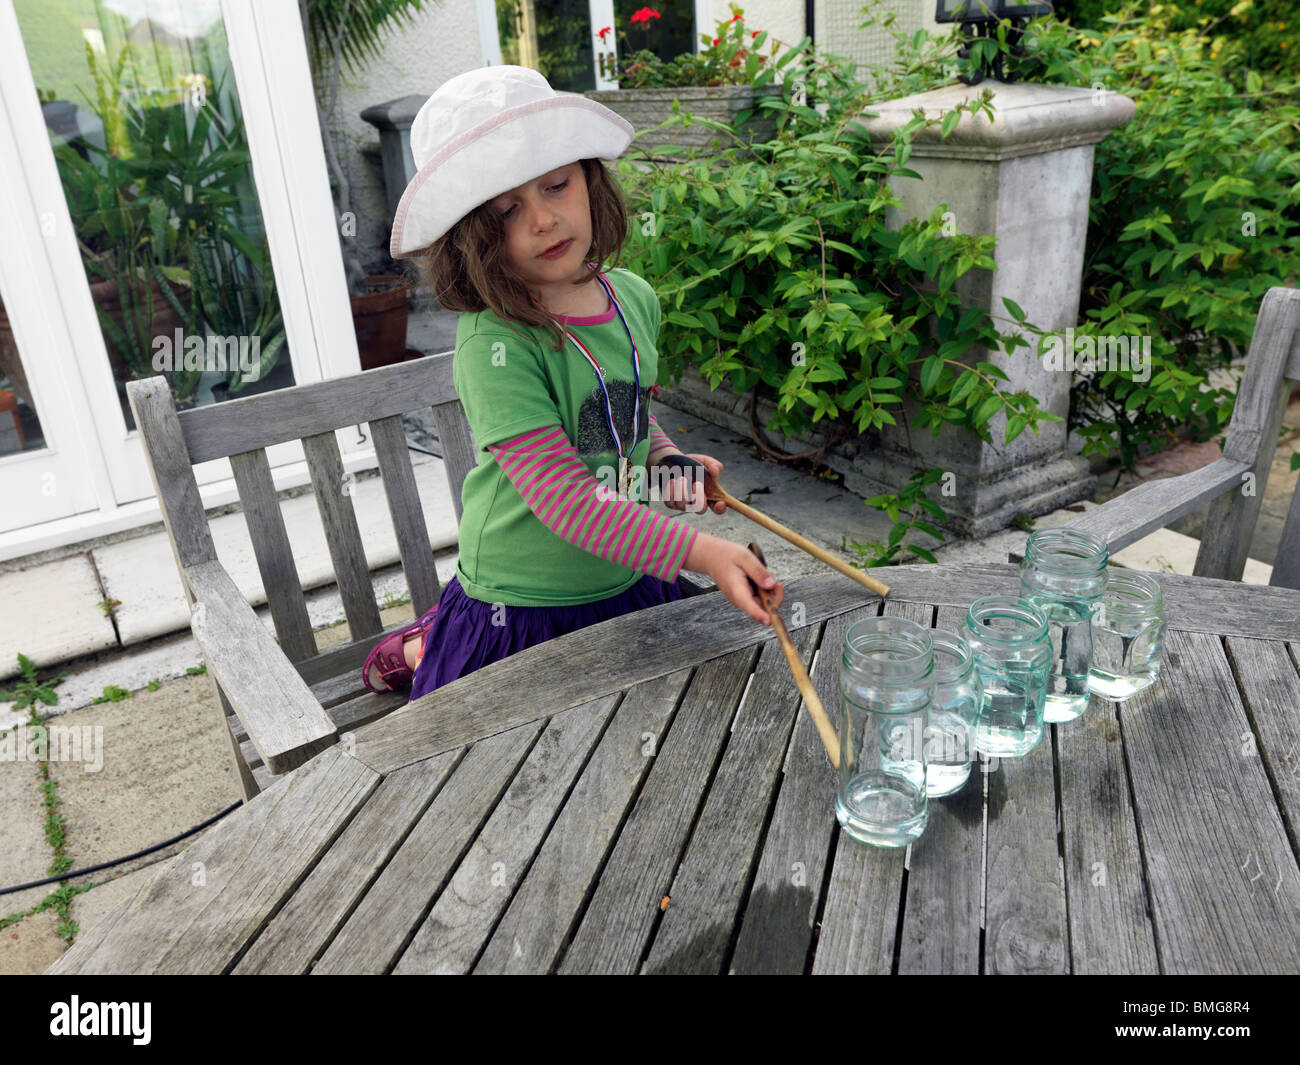 Jeune fille de faire de la musique à l'aide de pots de verre plein d'eau et de les frapper avec des cuillères en bois Banque D'Images